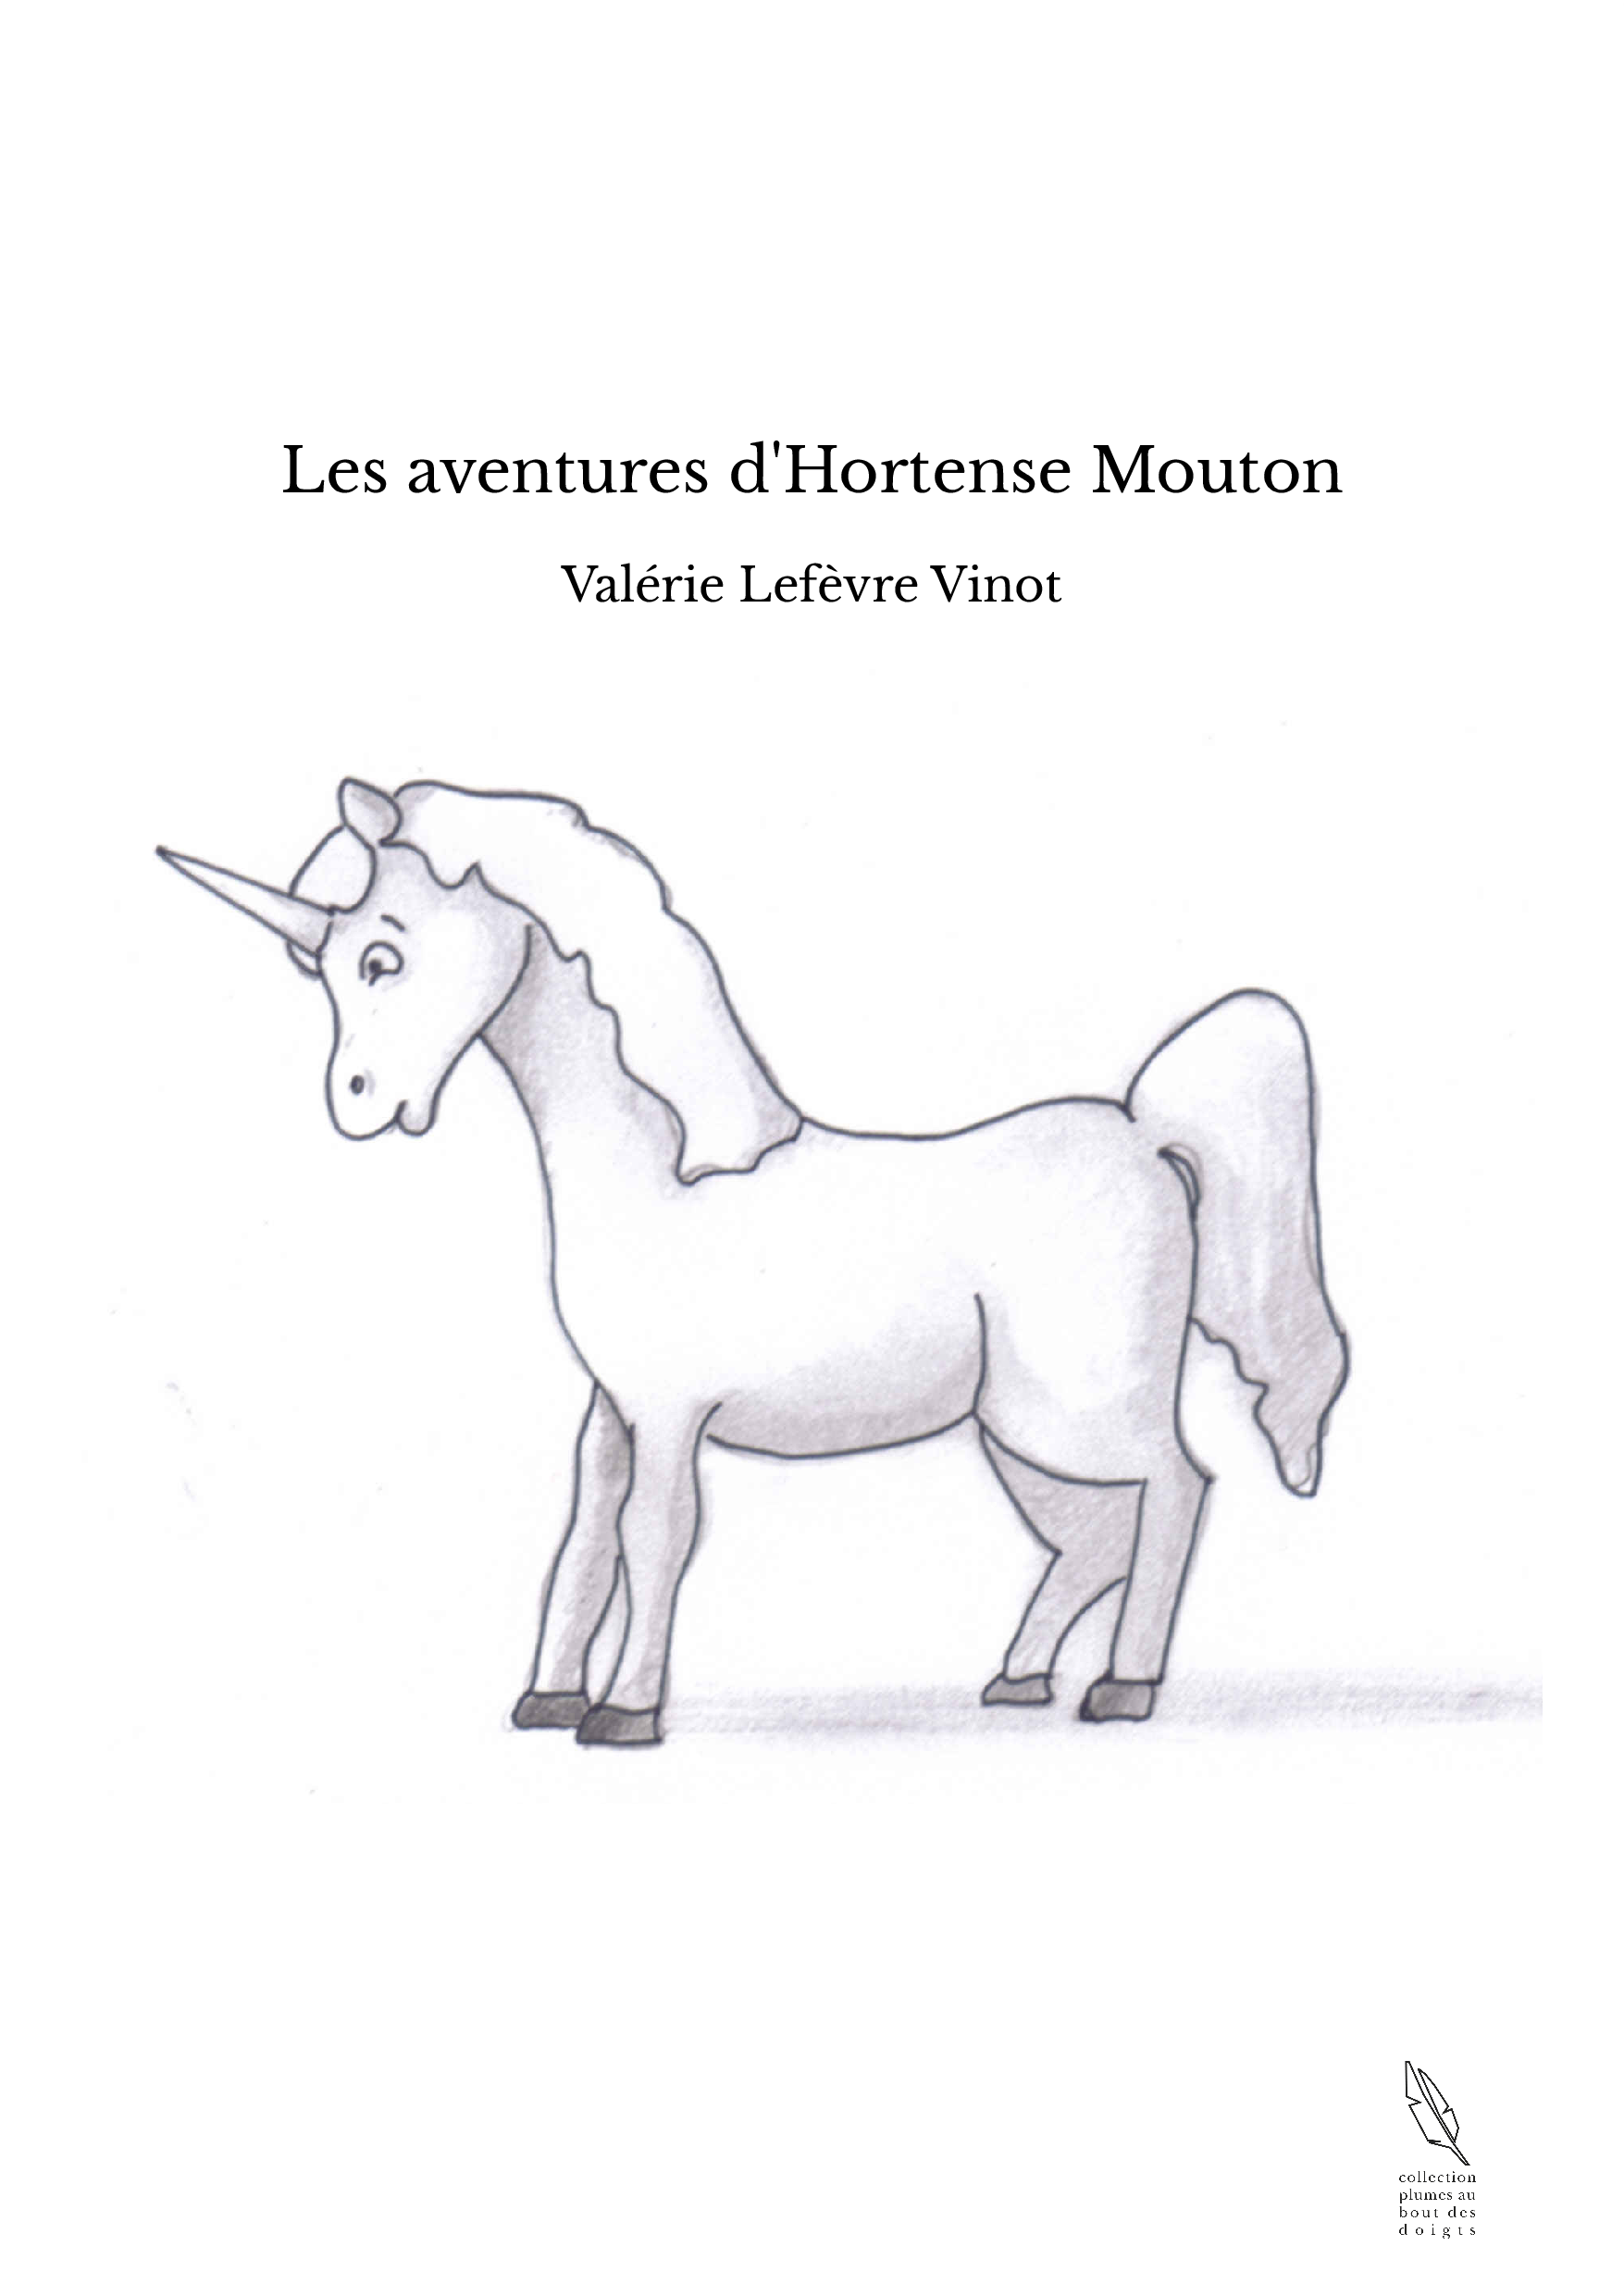 Les aventures d'Hortense Mouton